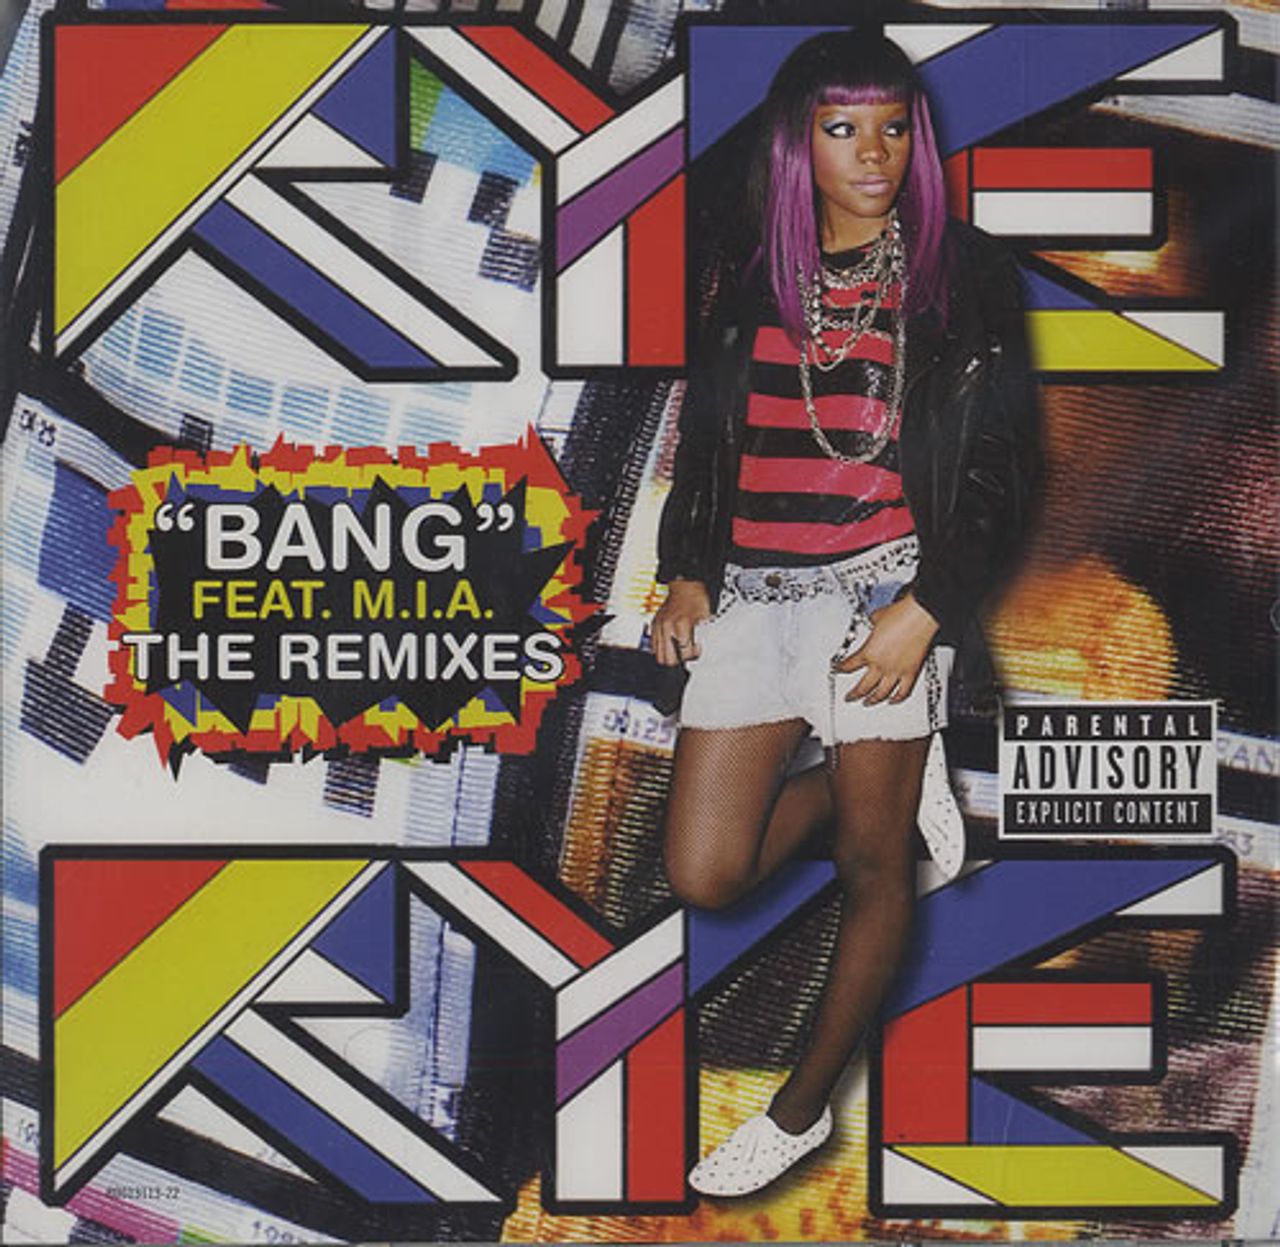 Bang bang ремикс